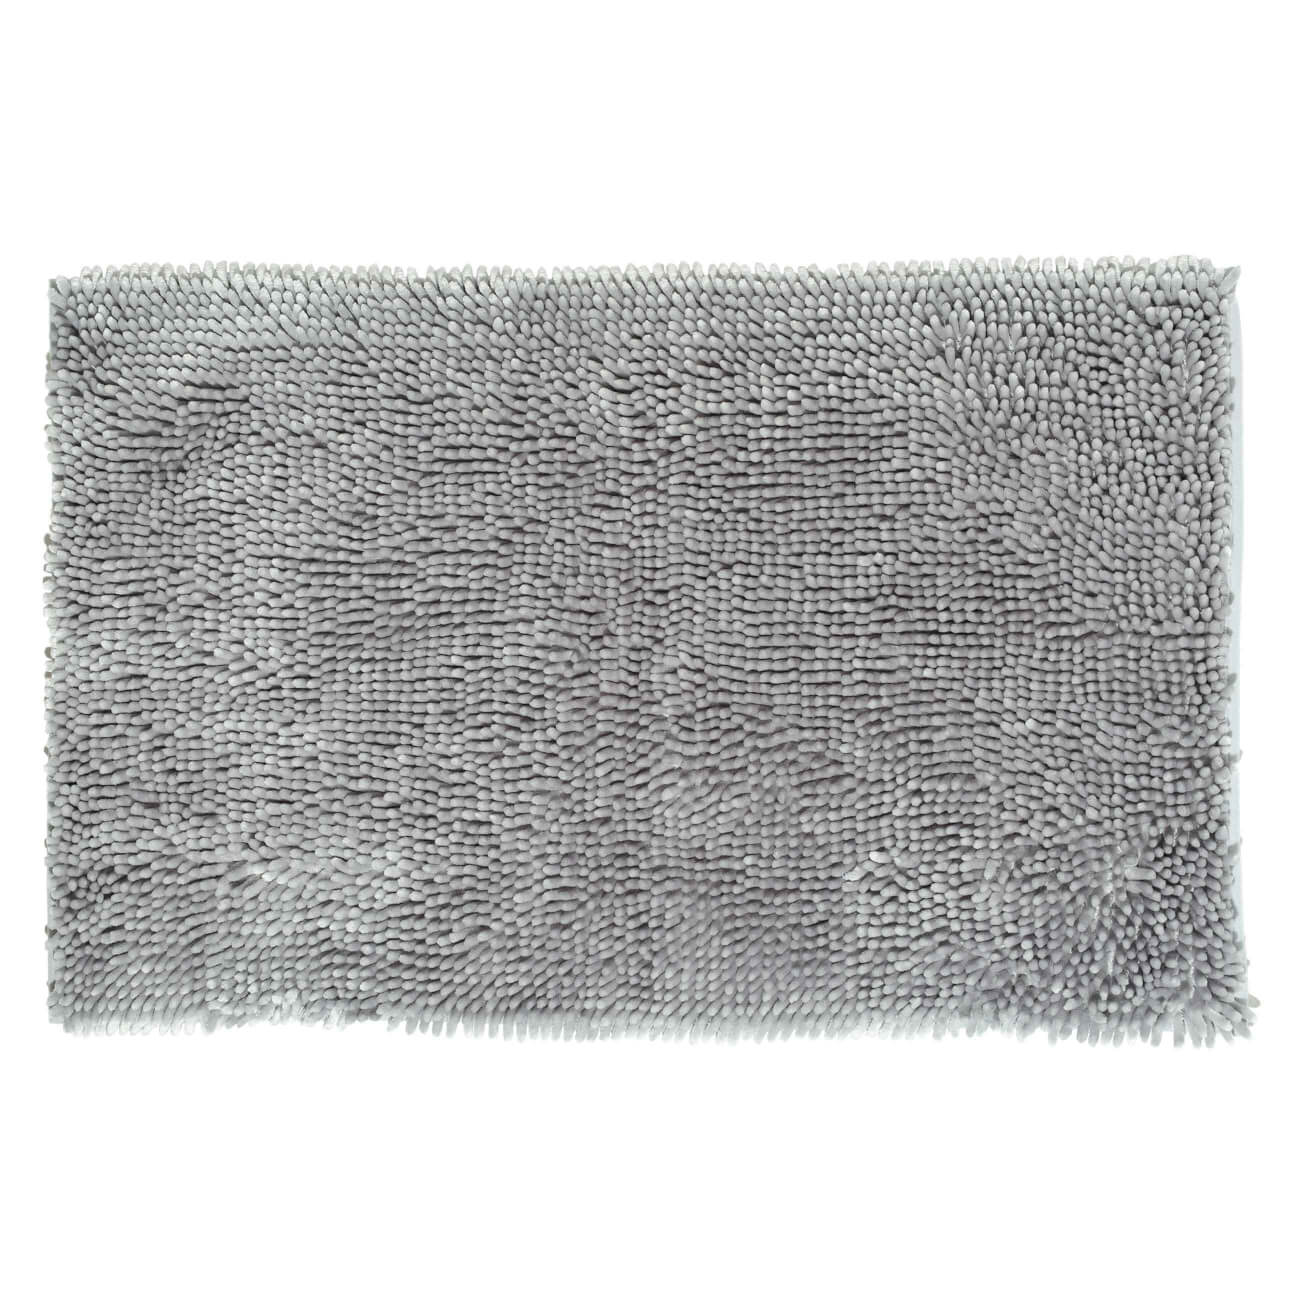 Коврик, 50х80 см, противоскользящий, полиэстер, серый, Fluff коврик для ванной iddis promo p02pa69i12